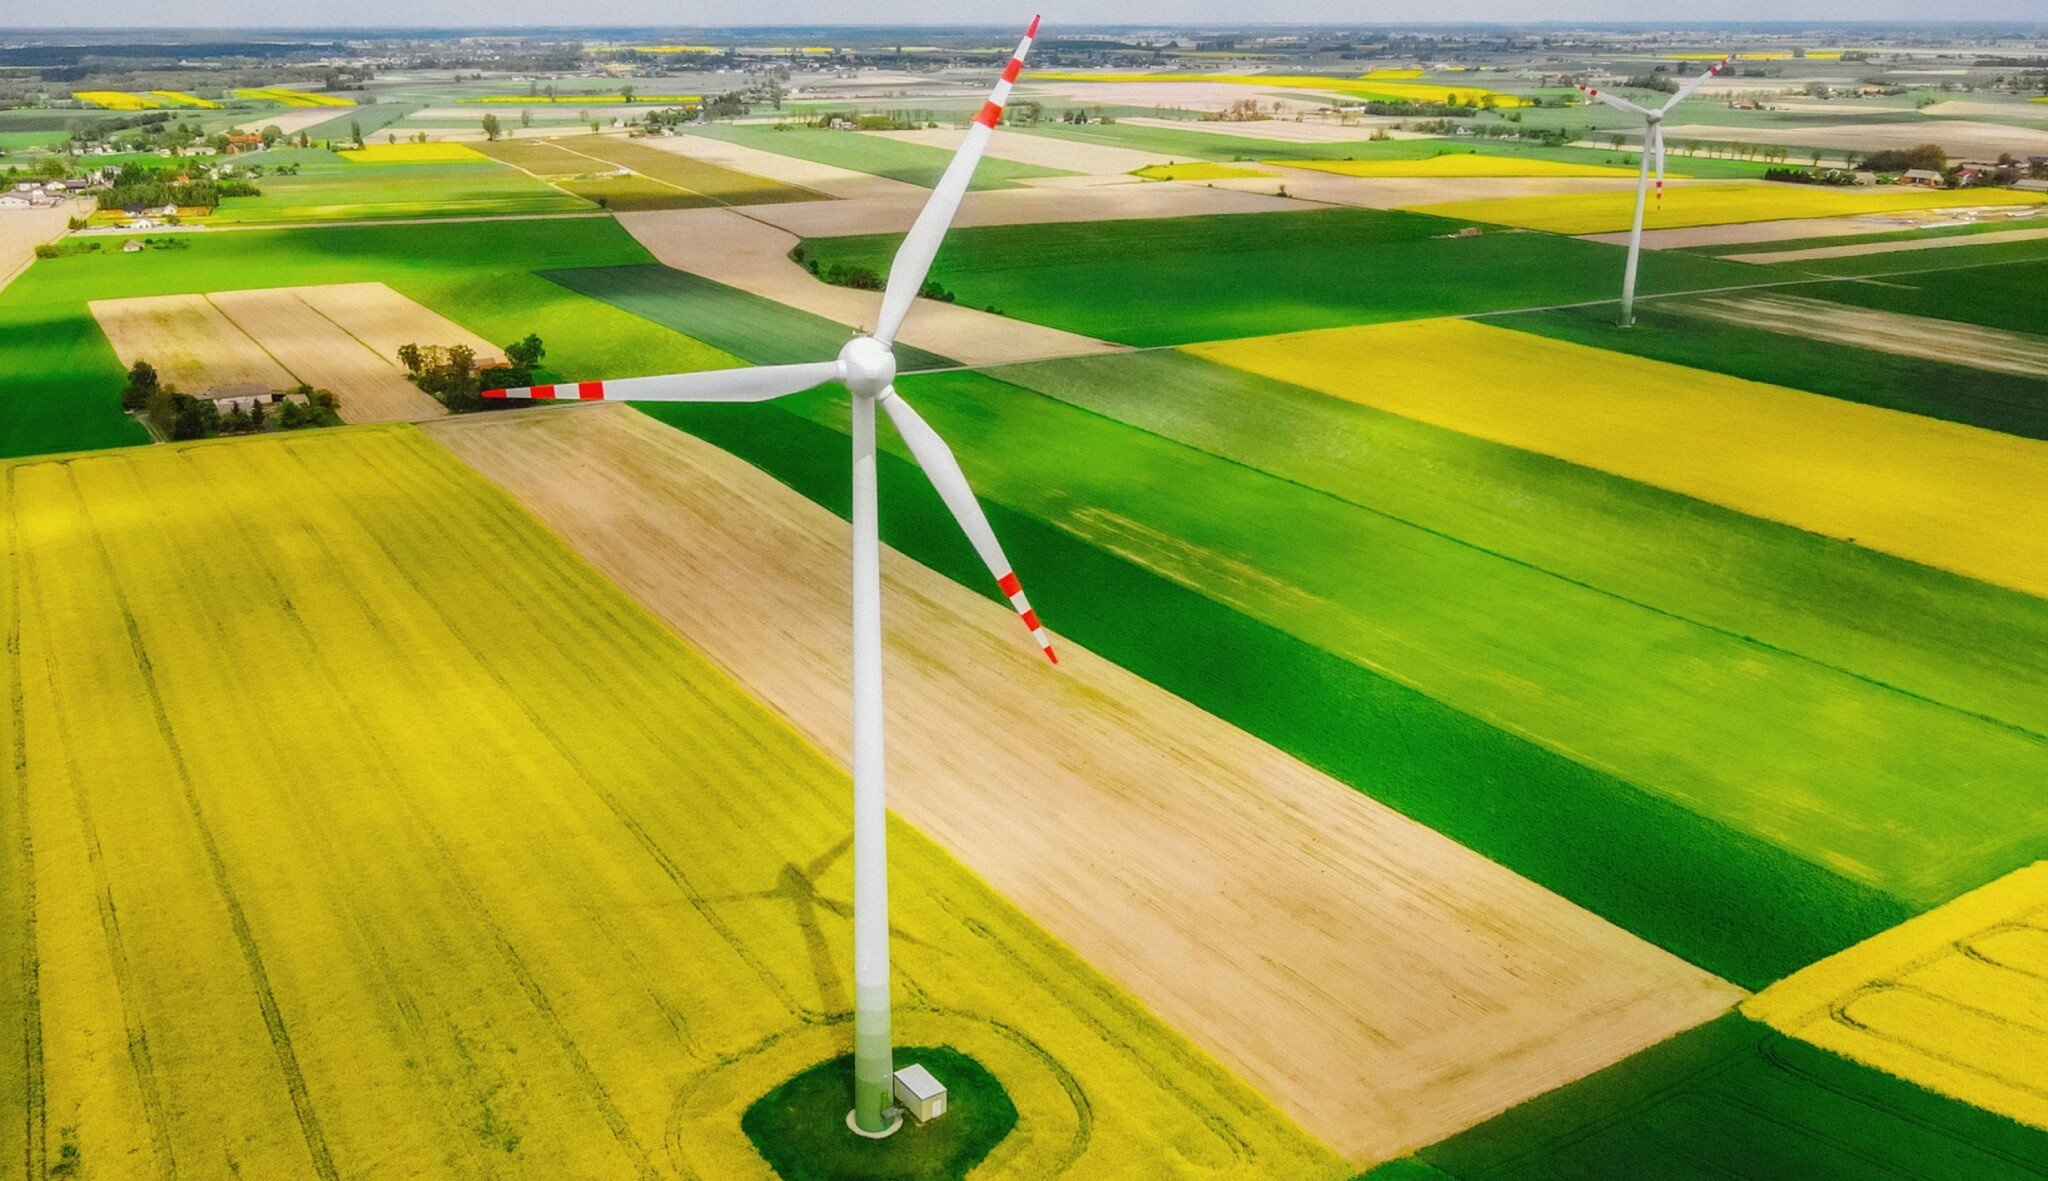 Nízké ceny za elektřinu v roce 2050? Podle studie je klíčový rozvoj větrné energetiky